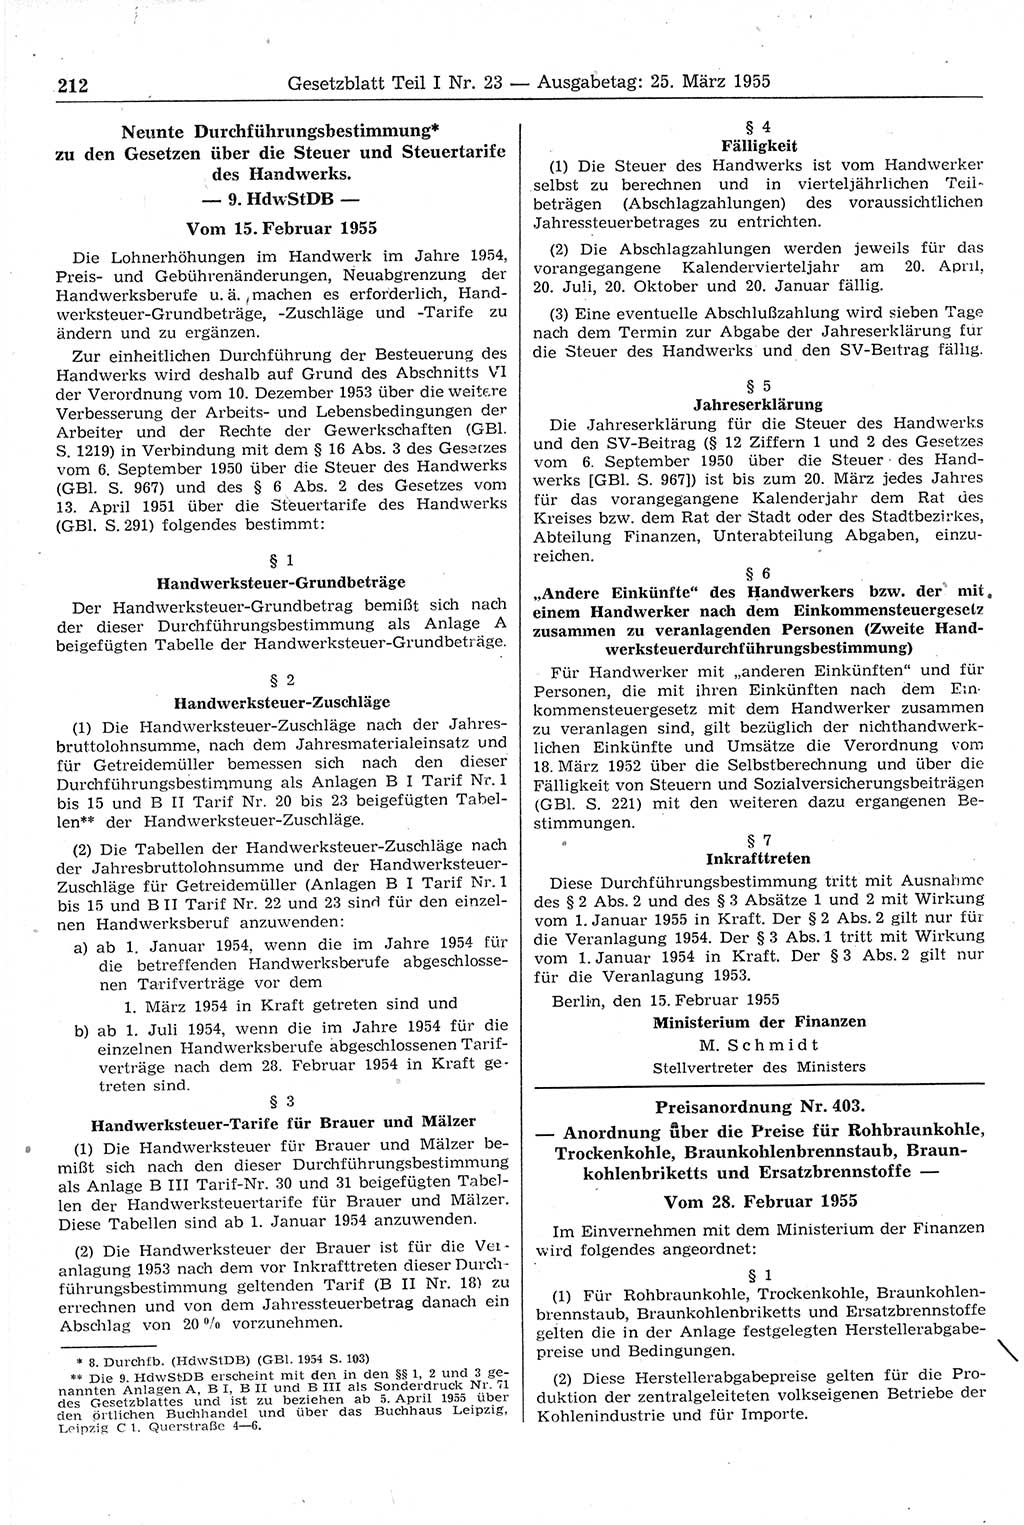 Gesetzblatt (GBl.) der Deutschen Demokratischen Republik (DDR) Teil Ⅰ 1955, Seite 212 (GBl. DDR Ⅰ 1955, S. 212)